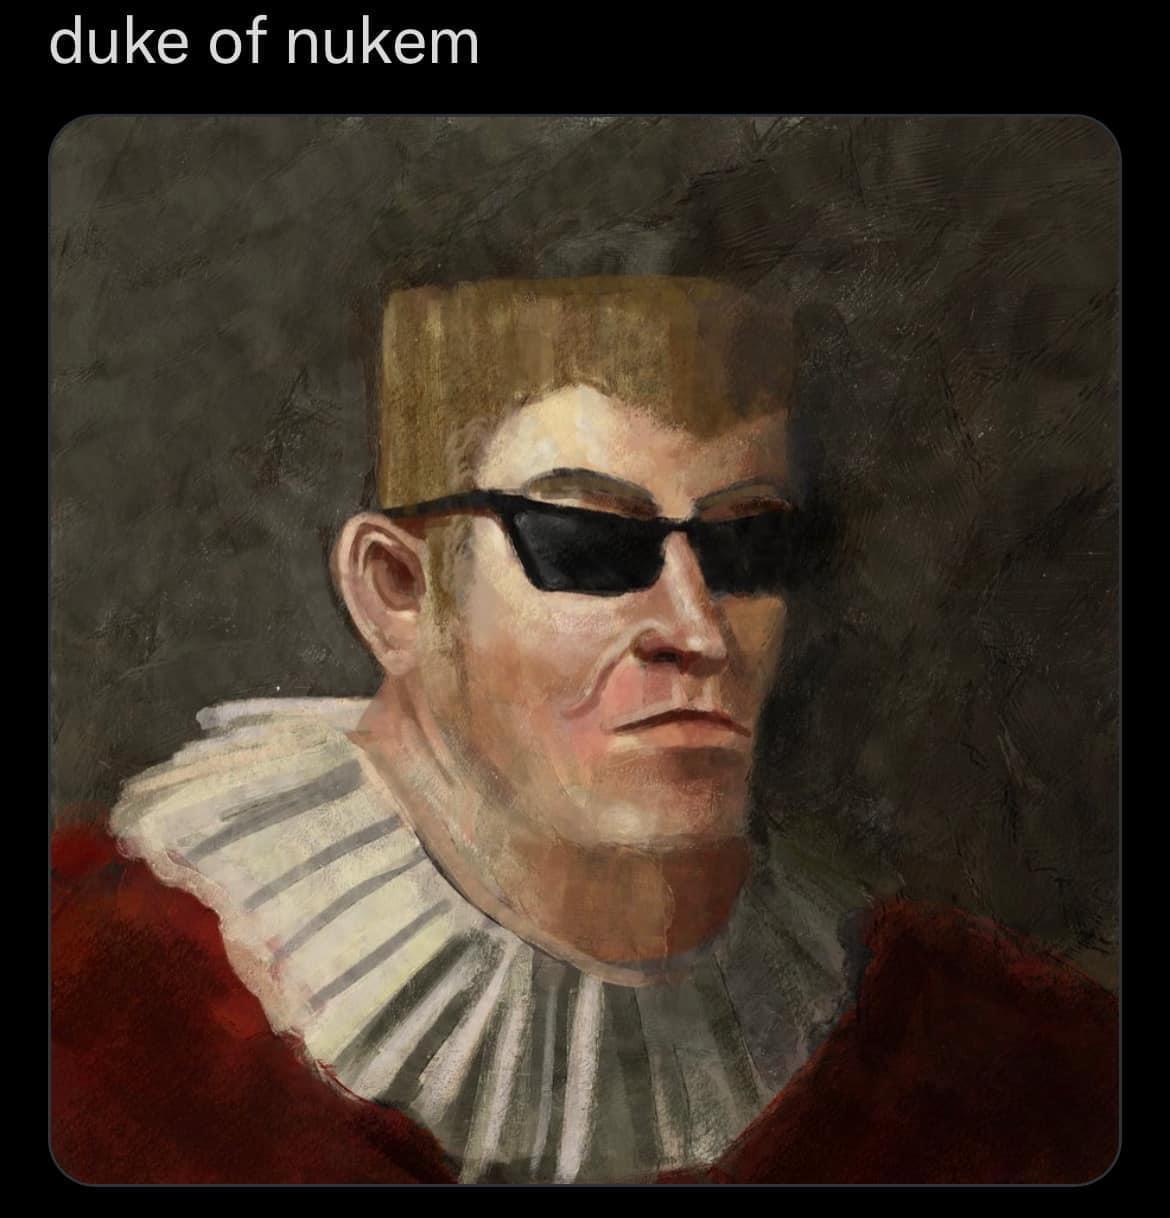 fresh memes - funny memes - self portrait - duke of nukem